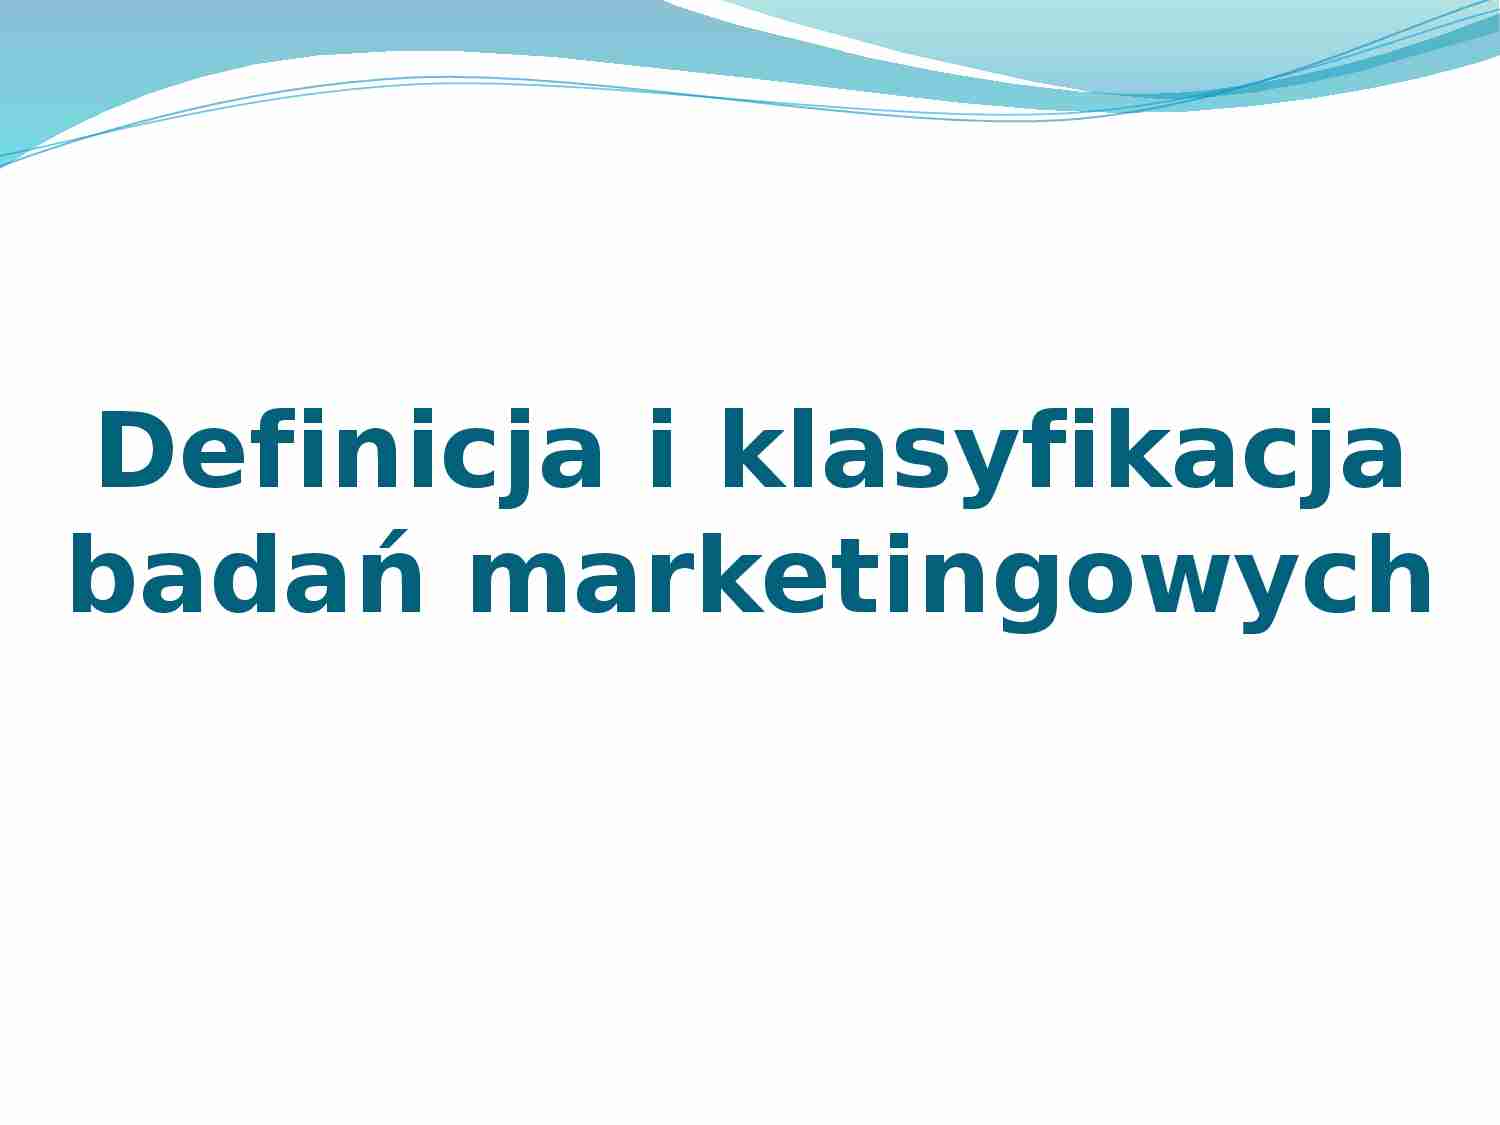 Definicja i klasyfikacja badan  marketingowych - prezentacja na podstawy marketingu - strona 1